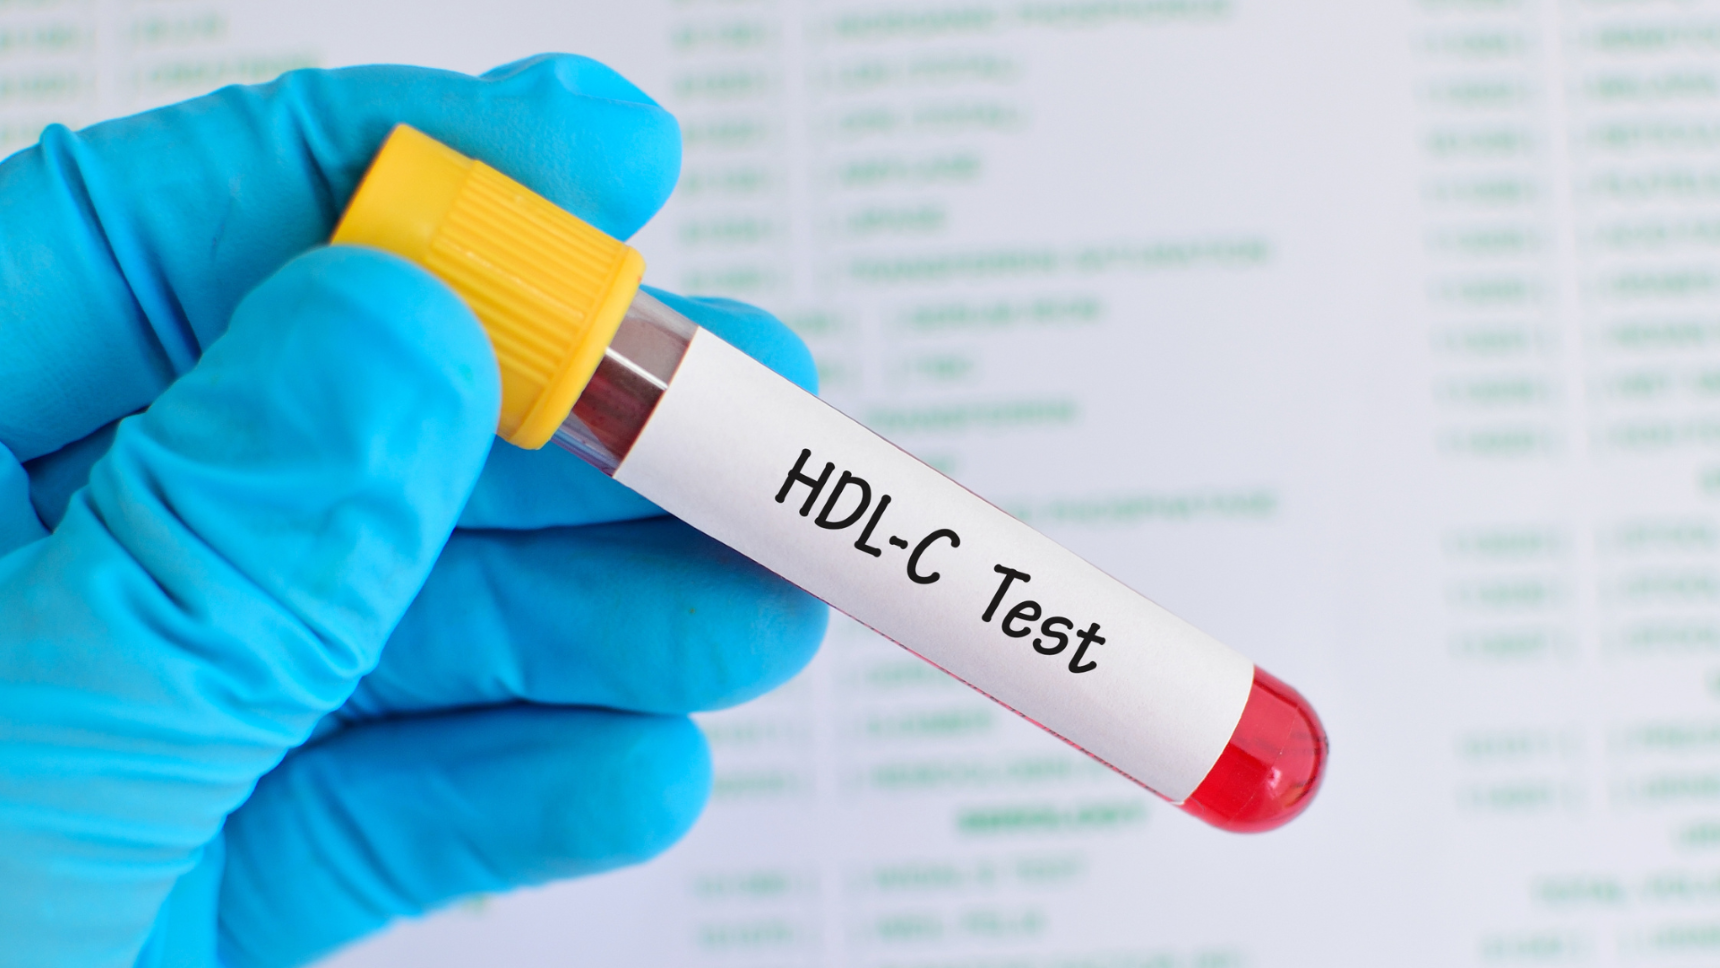 บริการทดสอบประสิทธิภาพการผลิตคอเลสเตอรอล ประเภท HDL ในผลิตภัณฑ์